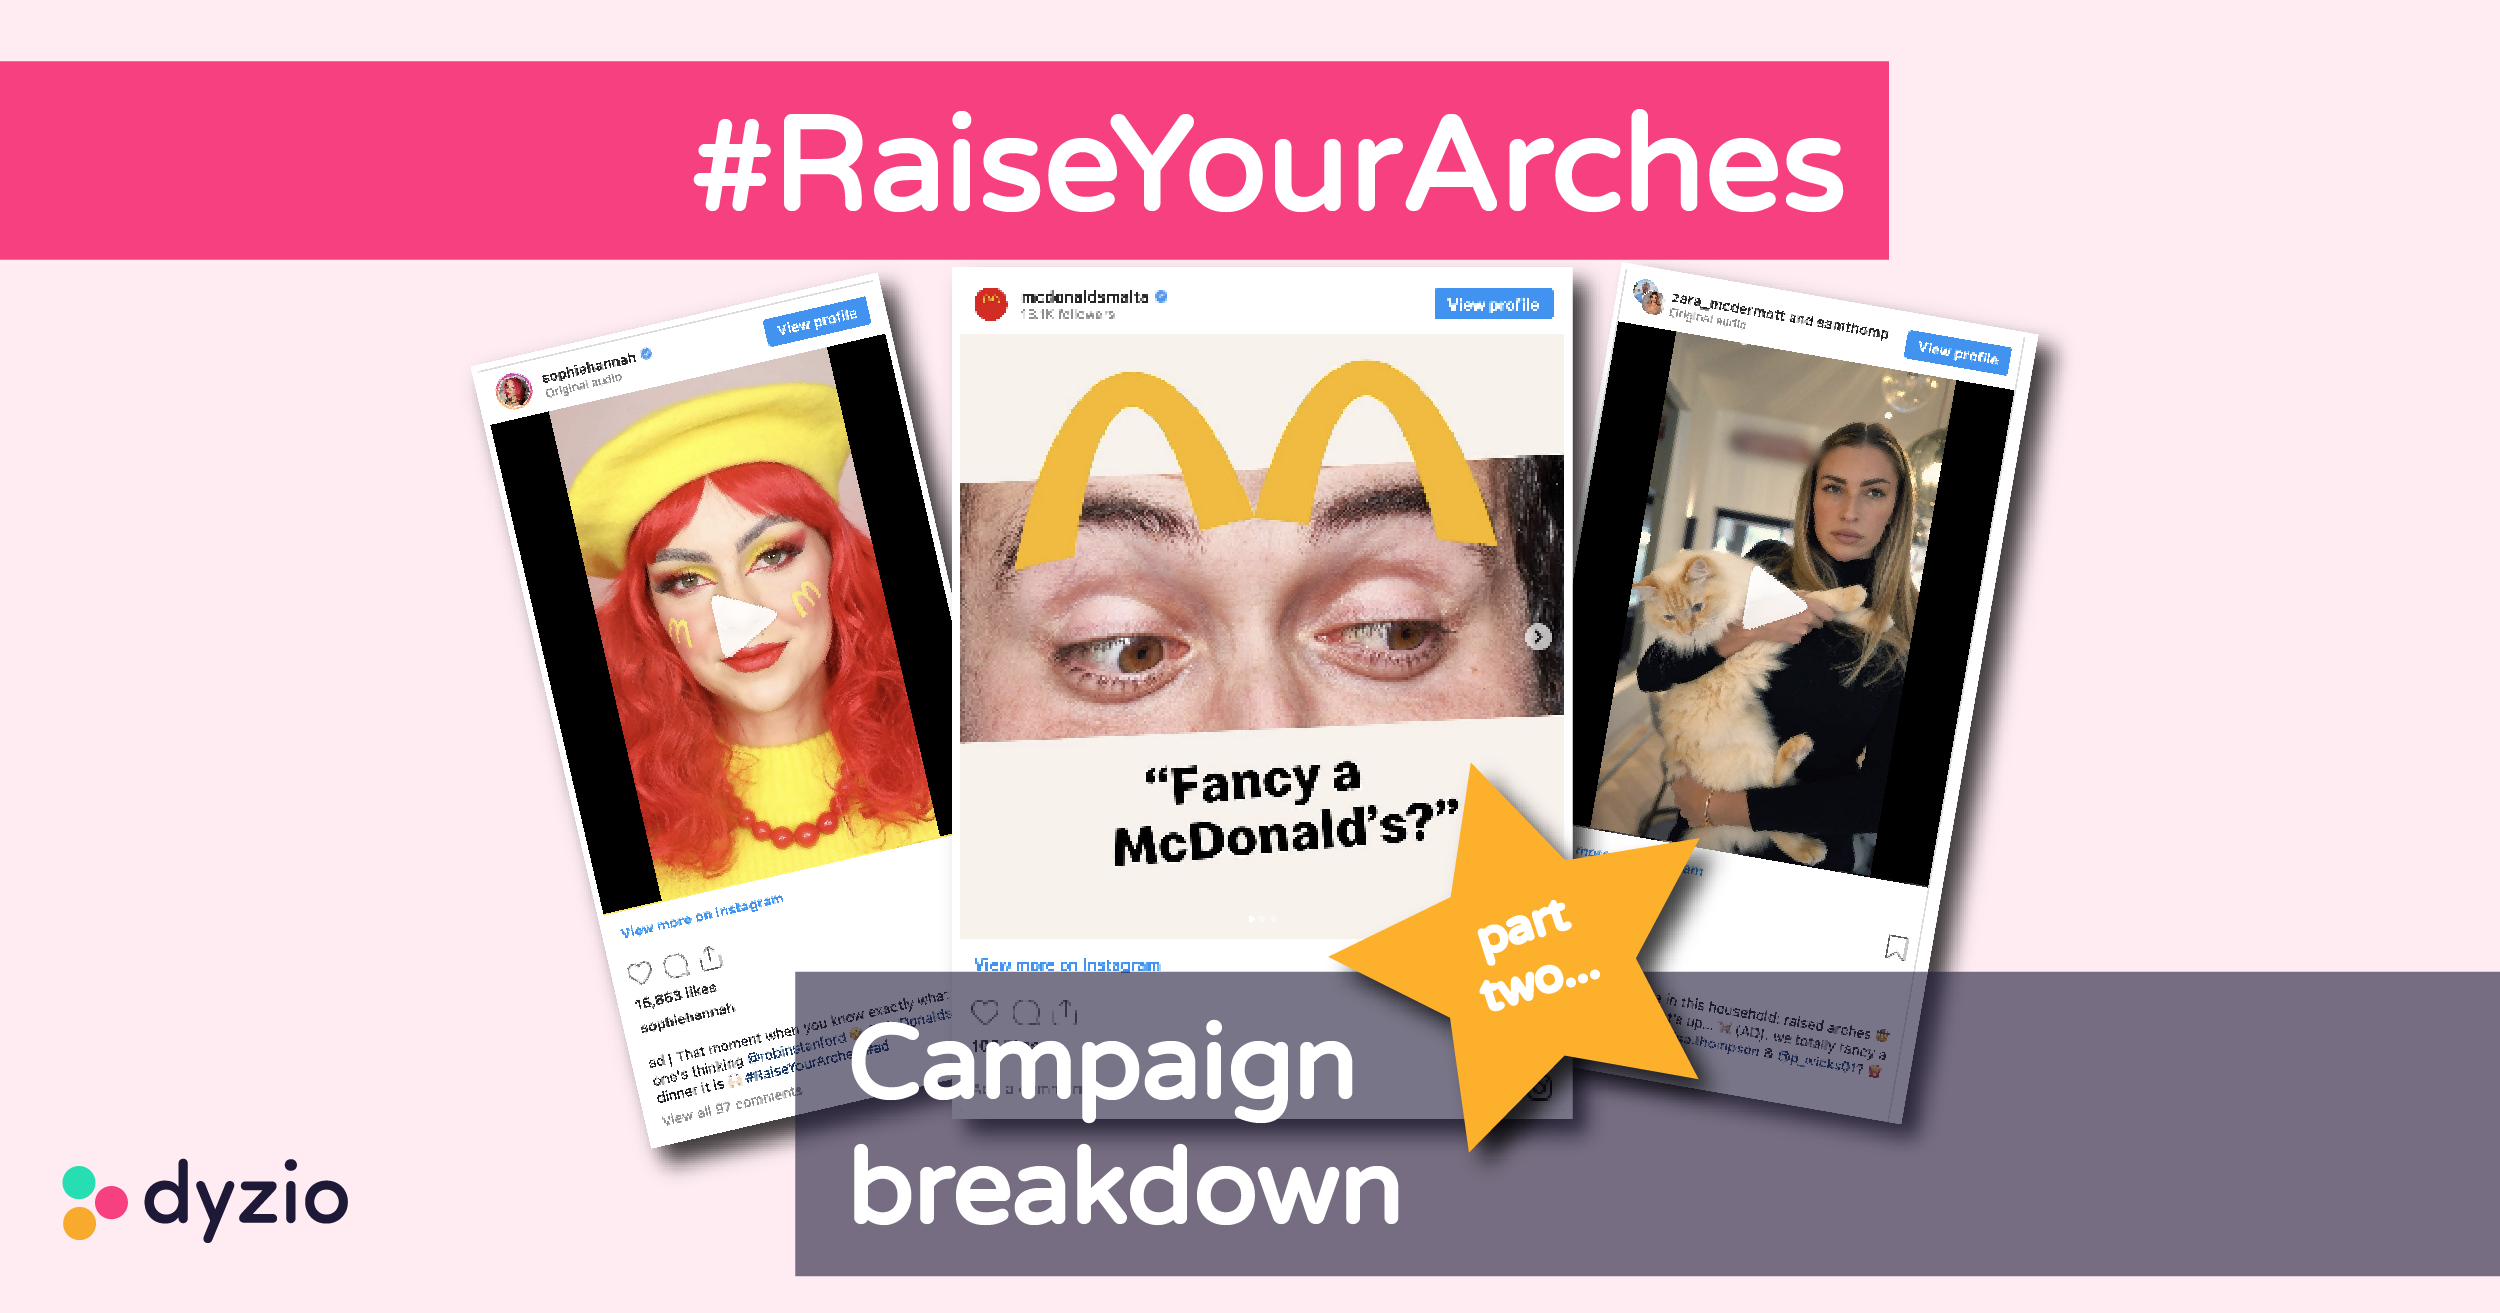 McDonalds Raise Your Arches campaign photo